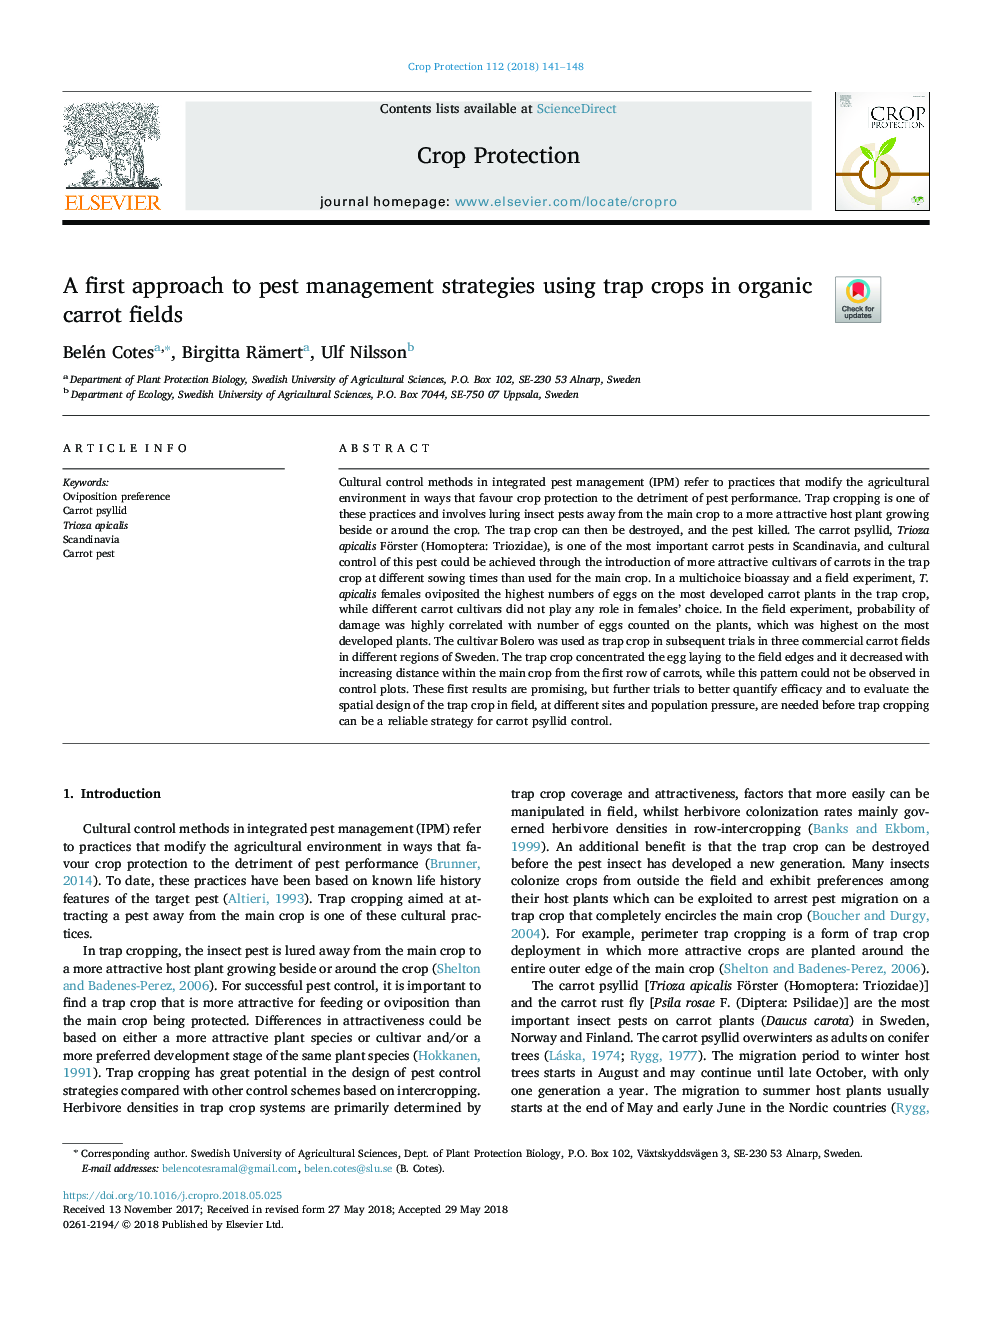 اولین رویکرد به استراتژی های مدیریت آفات با استفاده از محصولات تله در حوزه های هویج 